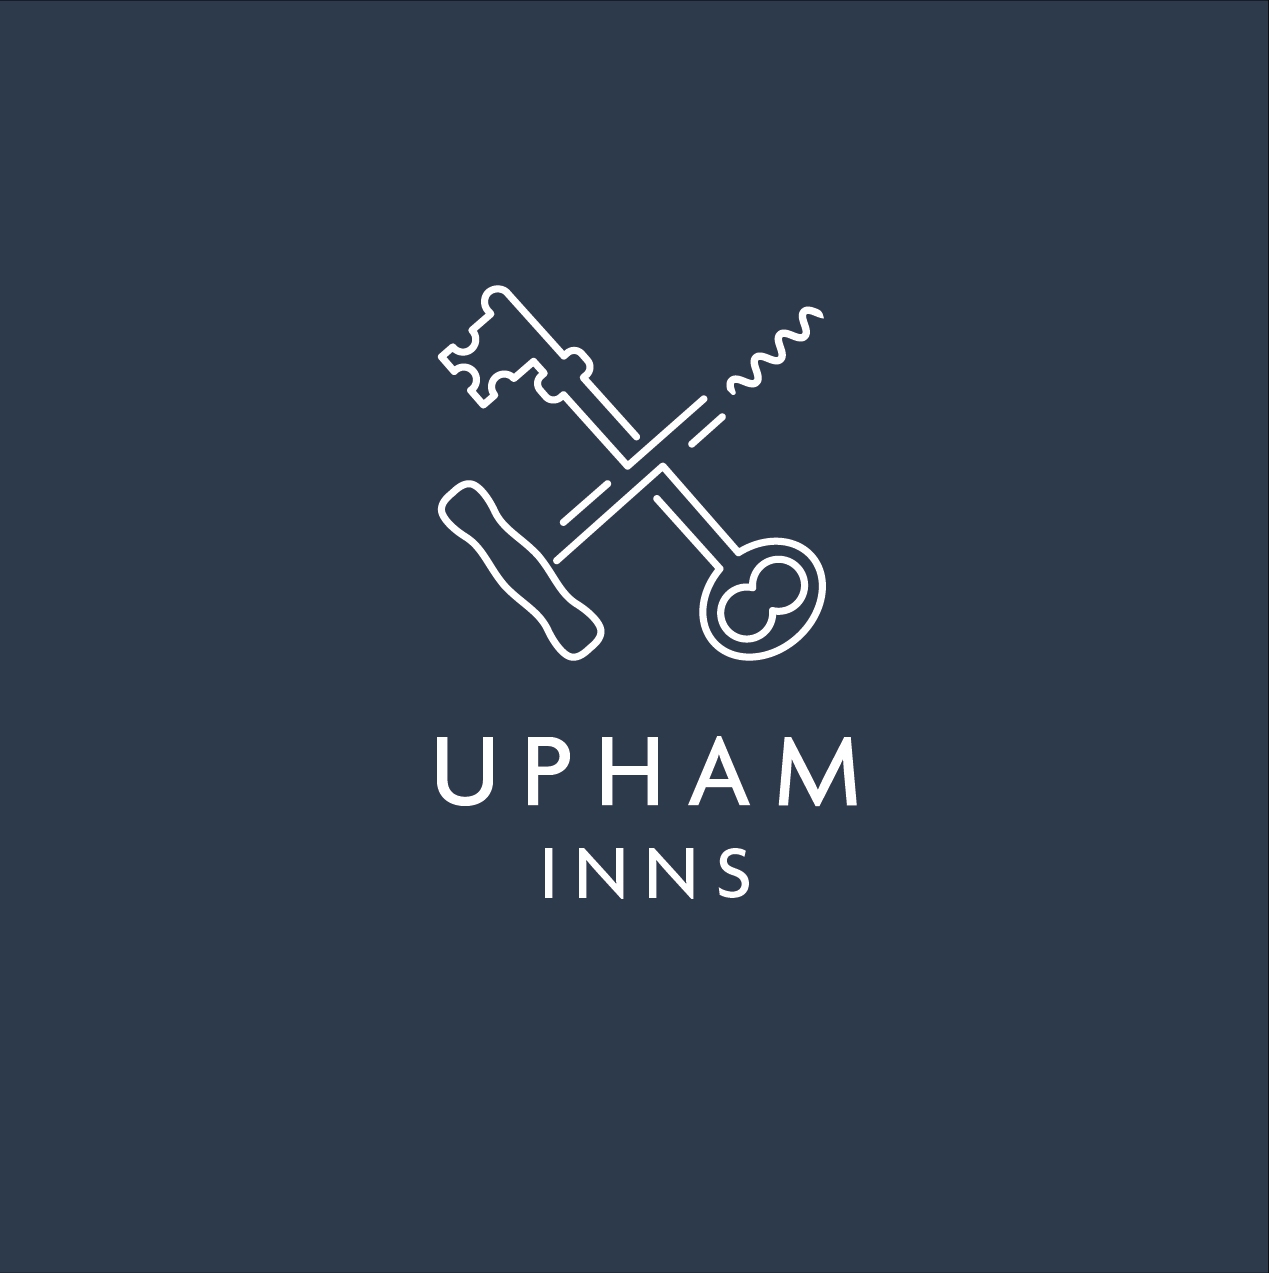 Upham Inns logo